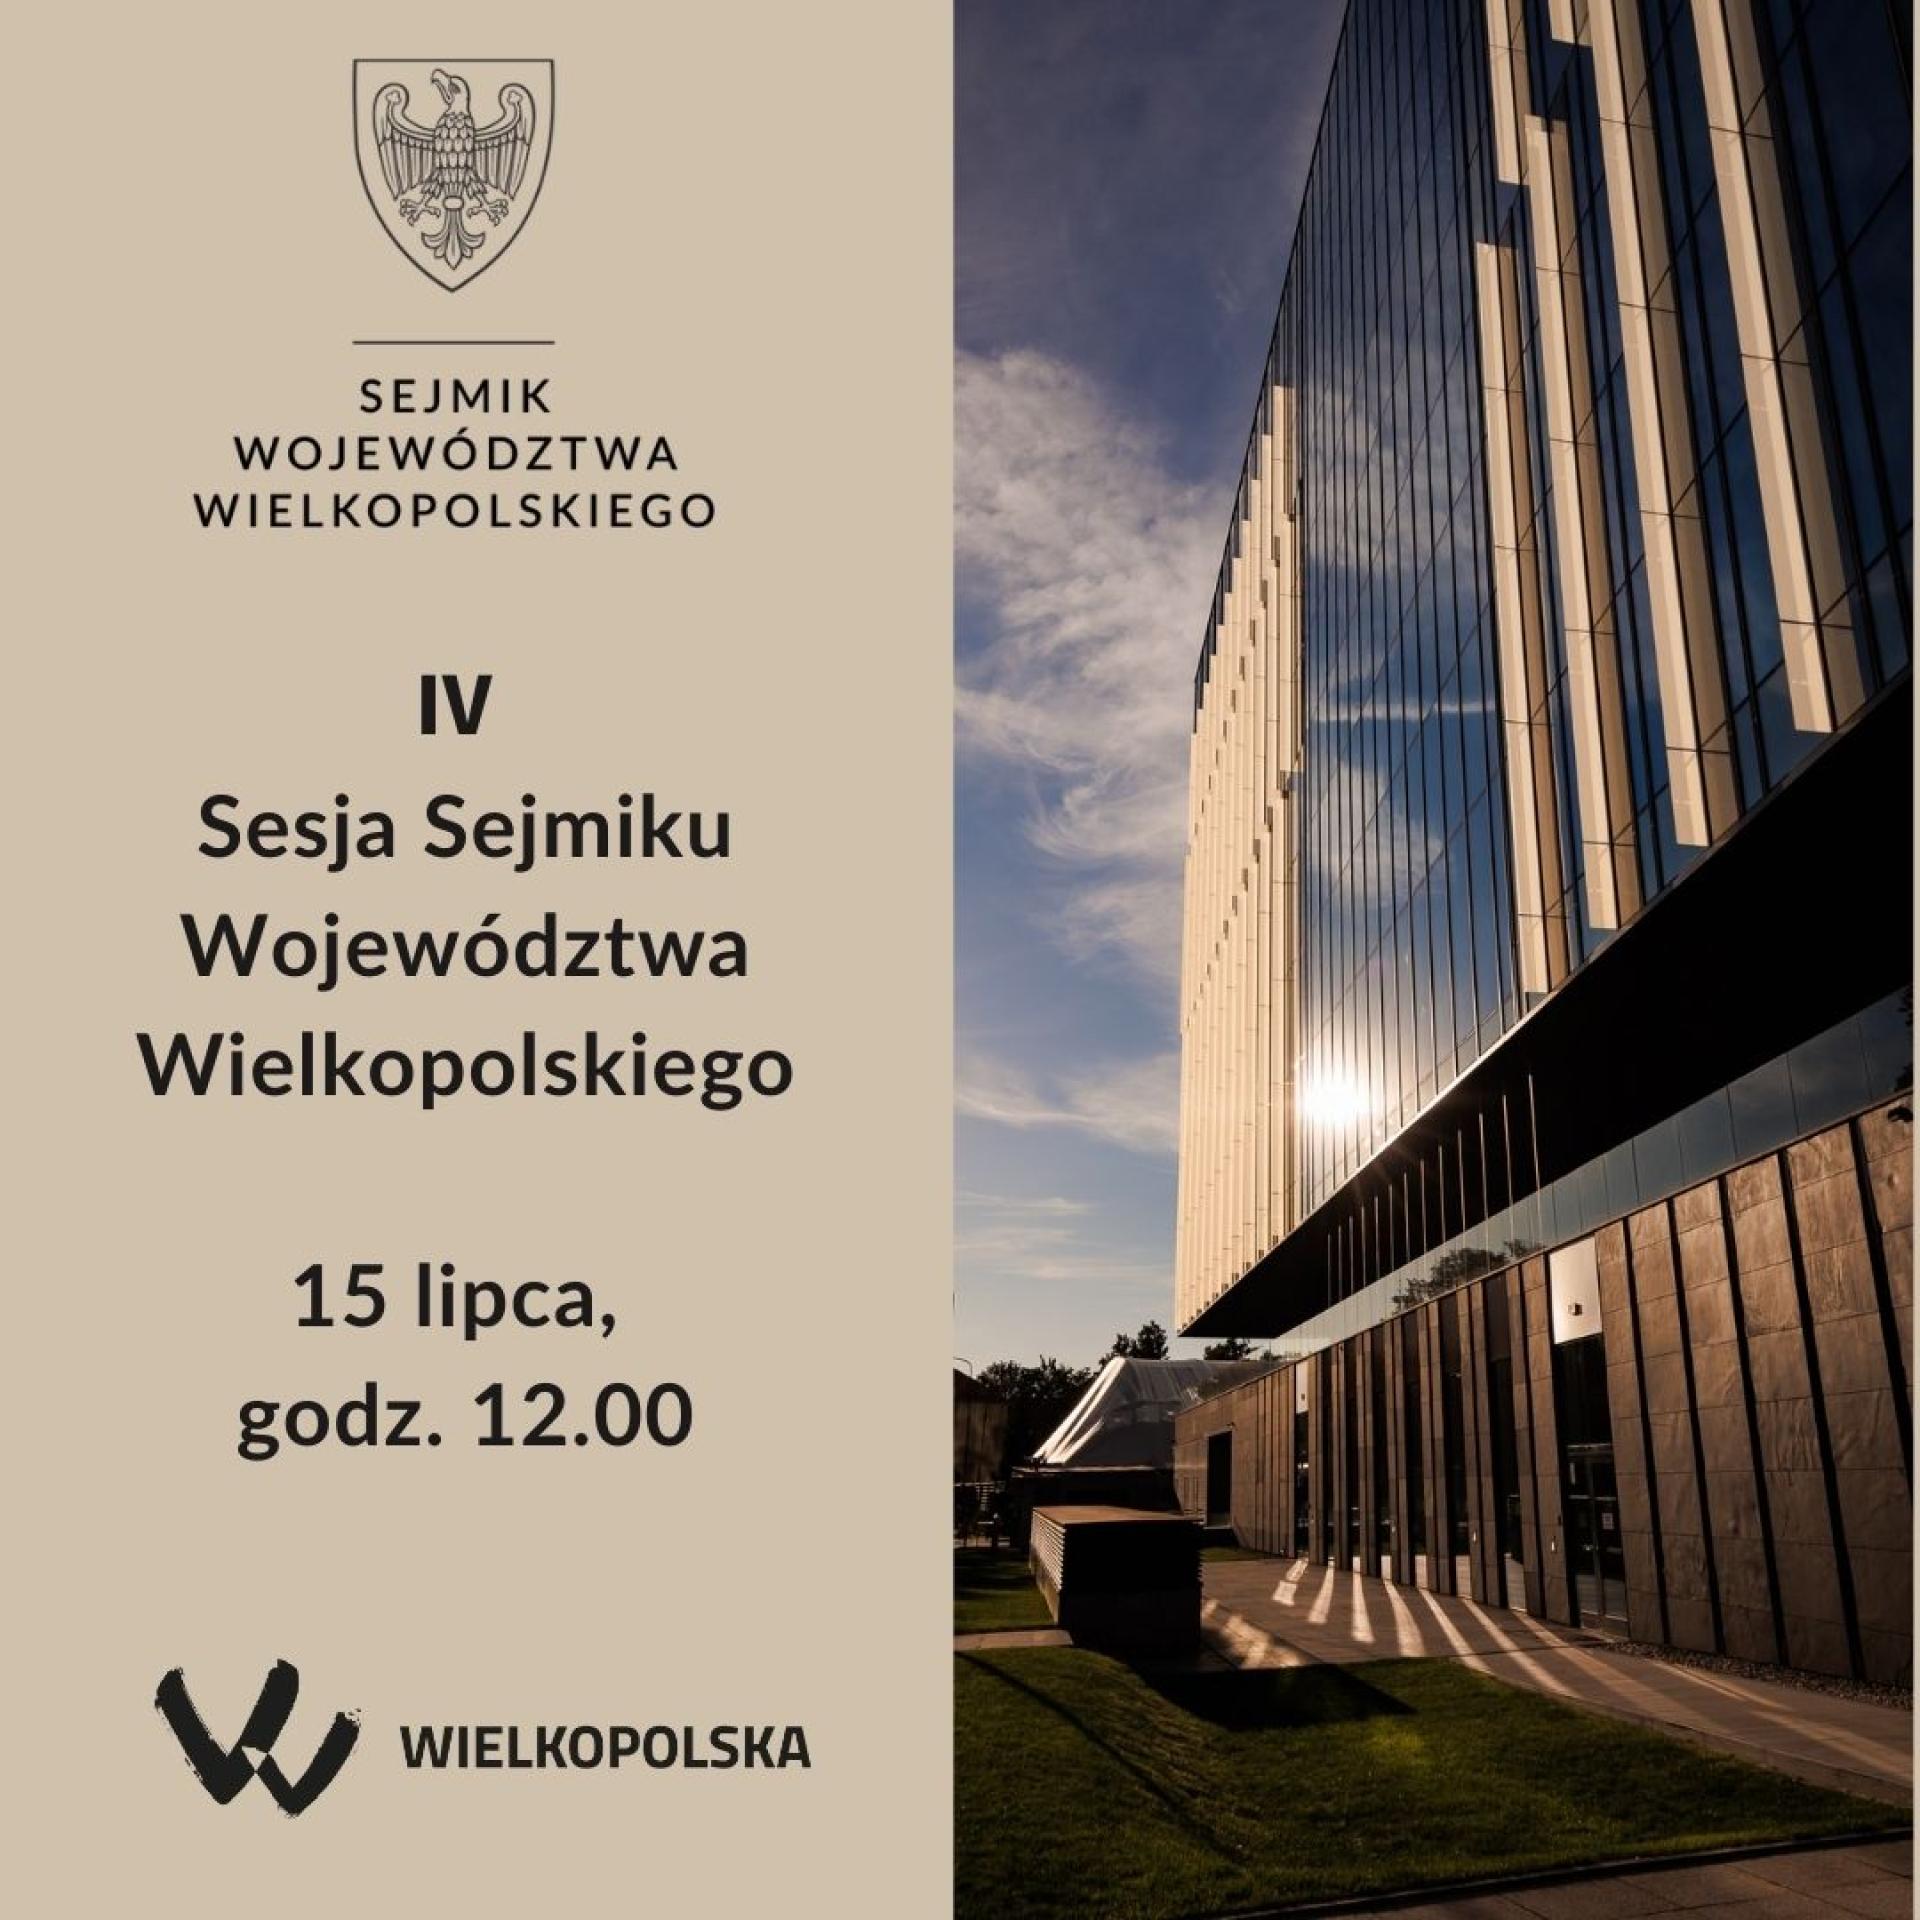 IV Sesja Sejmiku Województwa Wielkopolskiego  - zobacz więcej